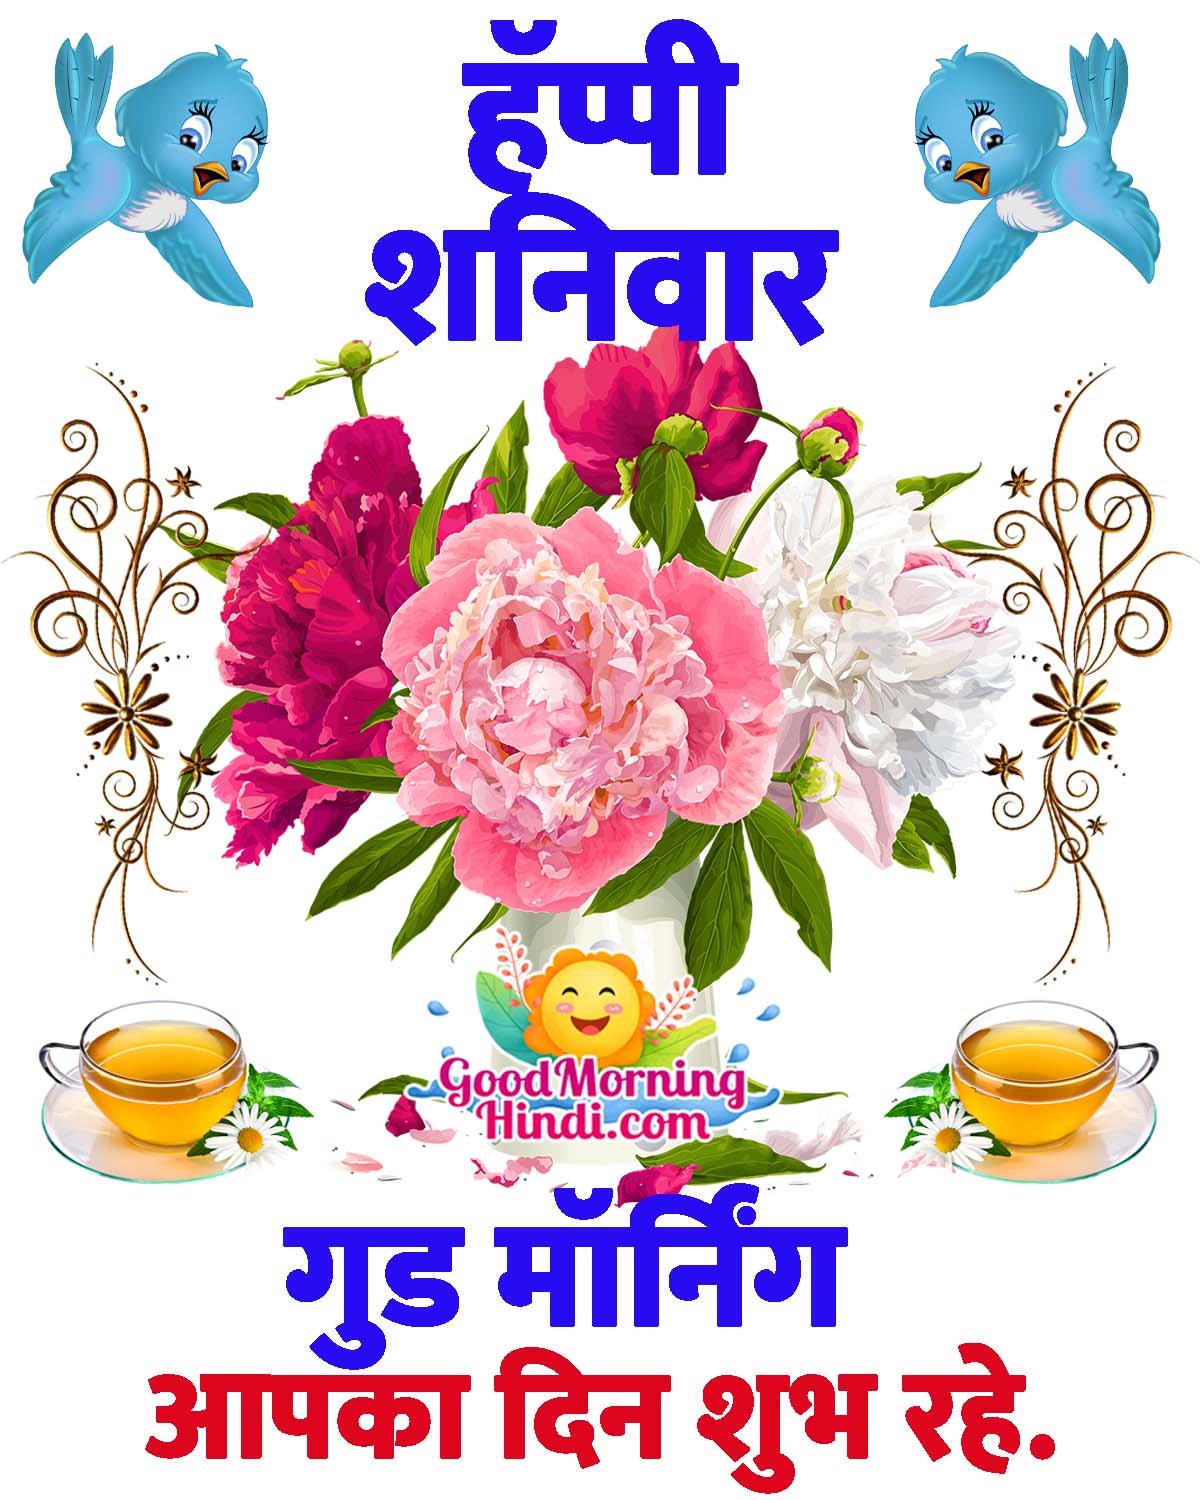 Happy Shanivar Good Morning Wish Image